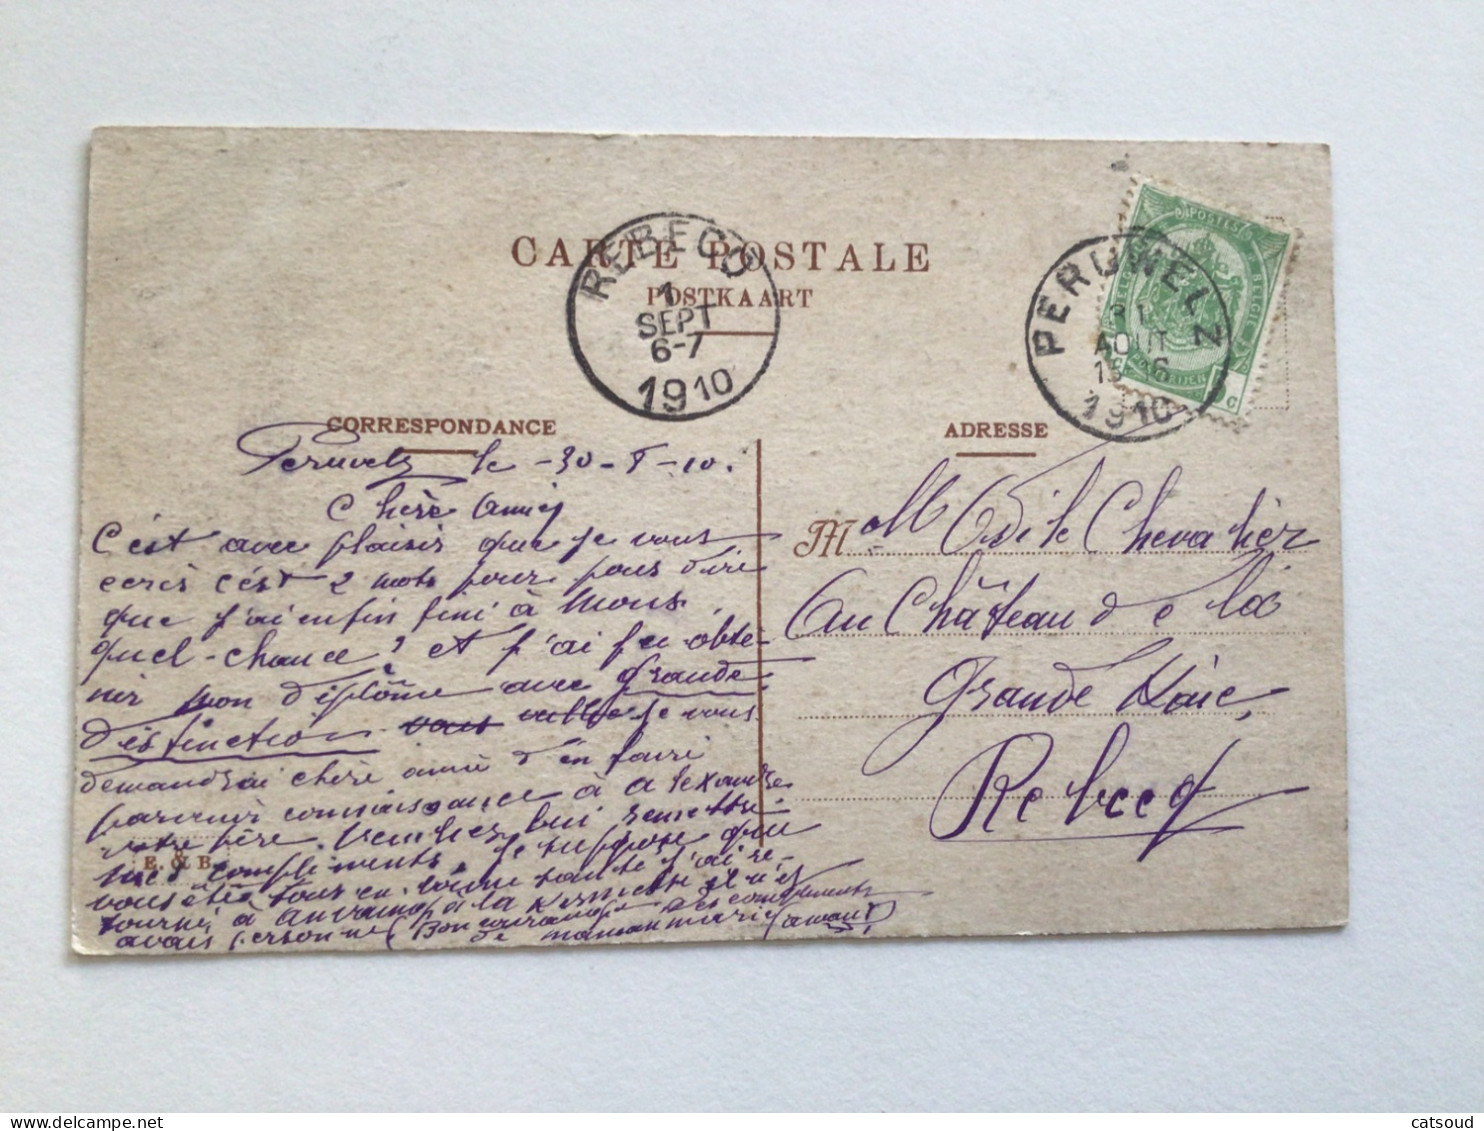 Carte Postale Ancienne (1910) Péruwelz Château Dapsens, Vue Des Jardins - Peruwelz